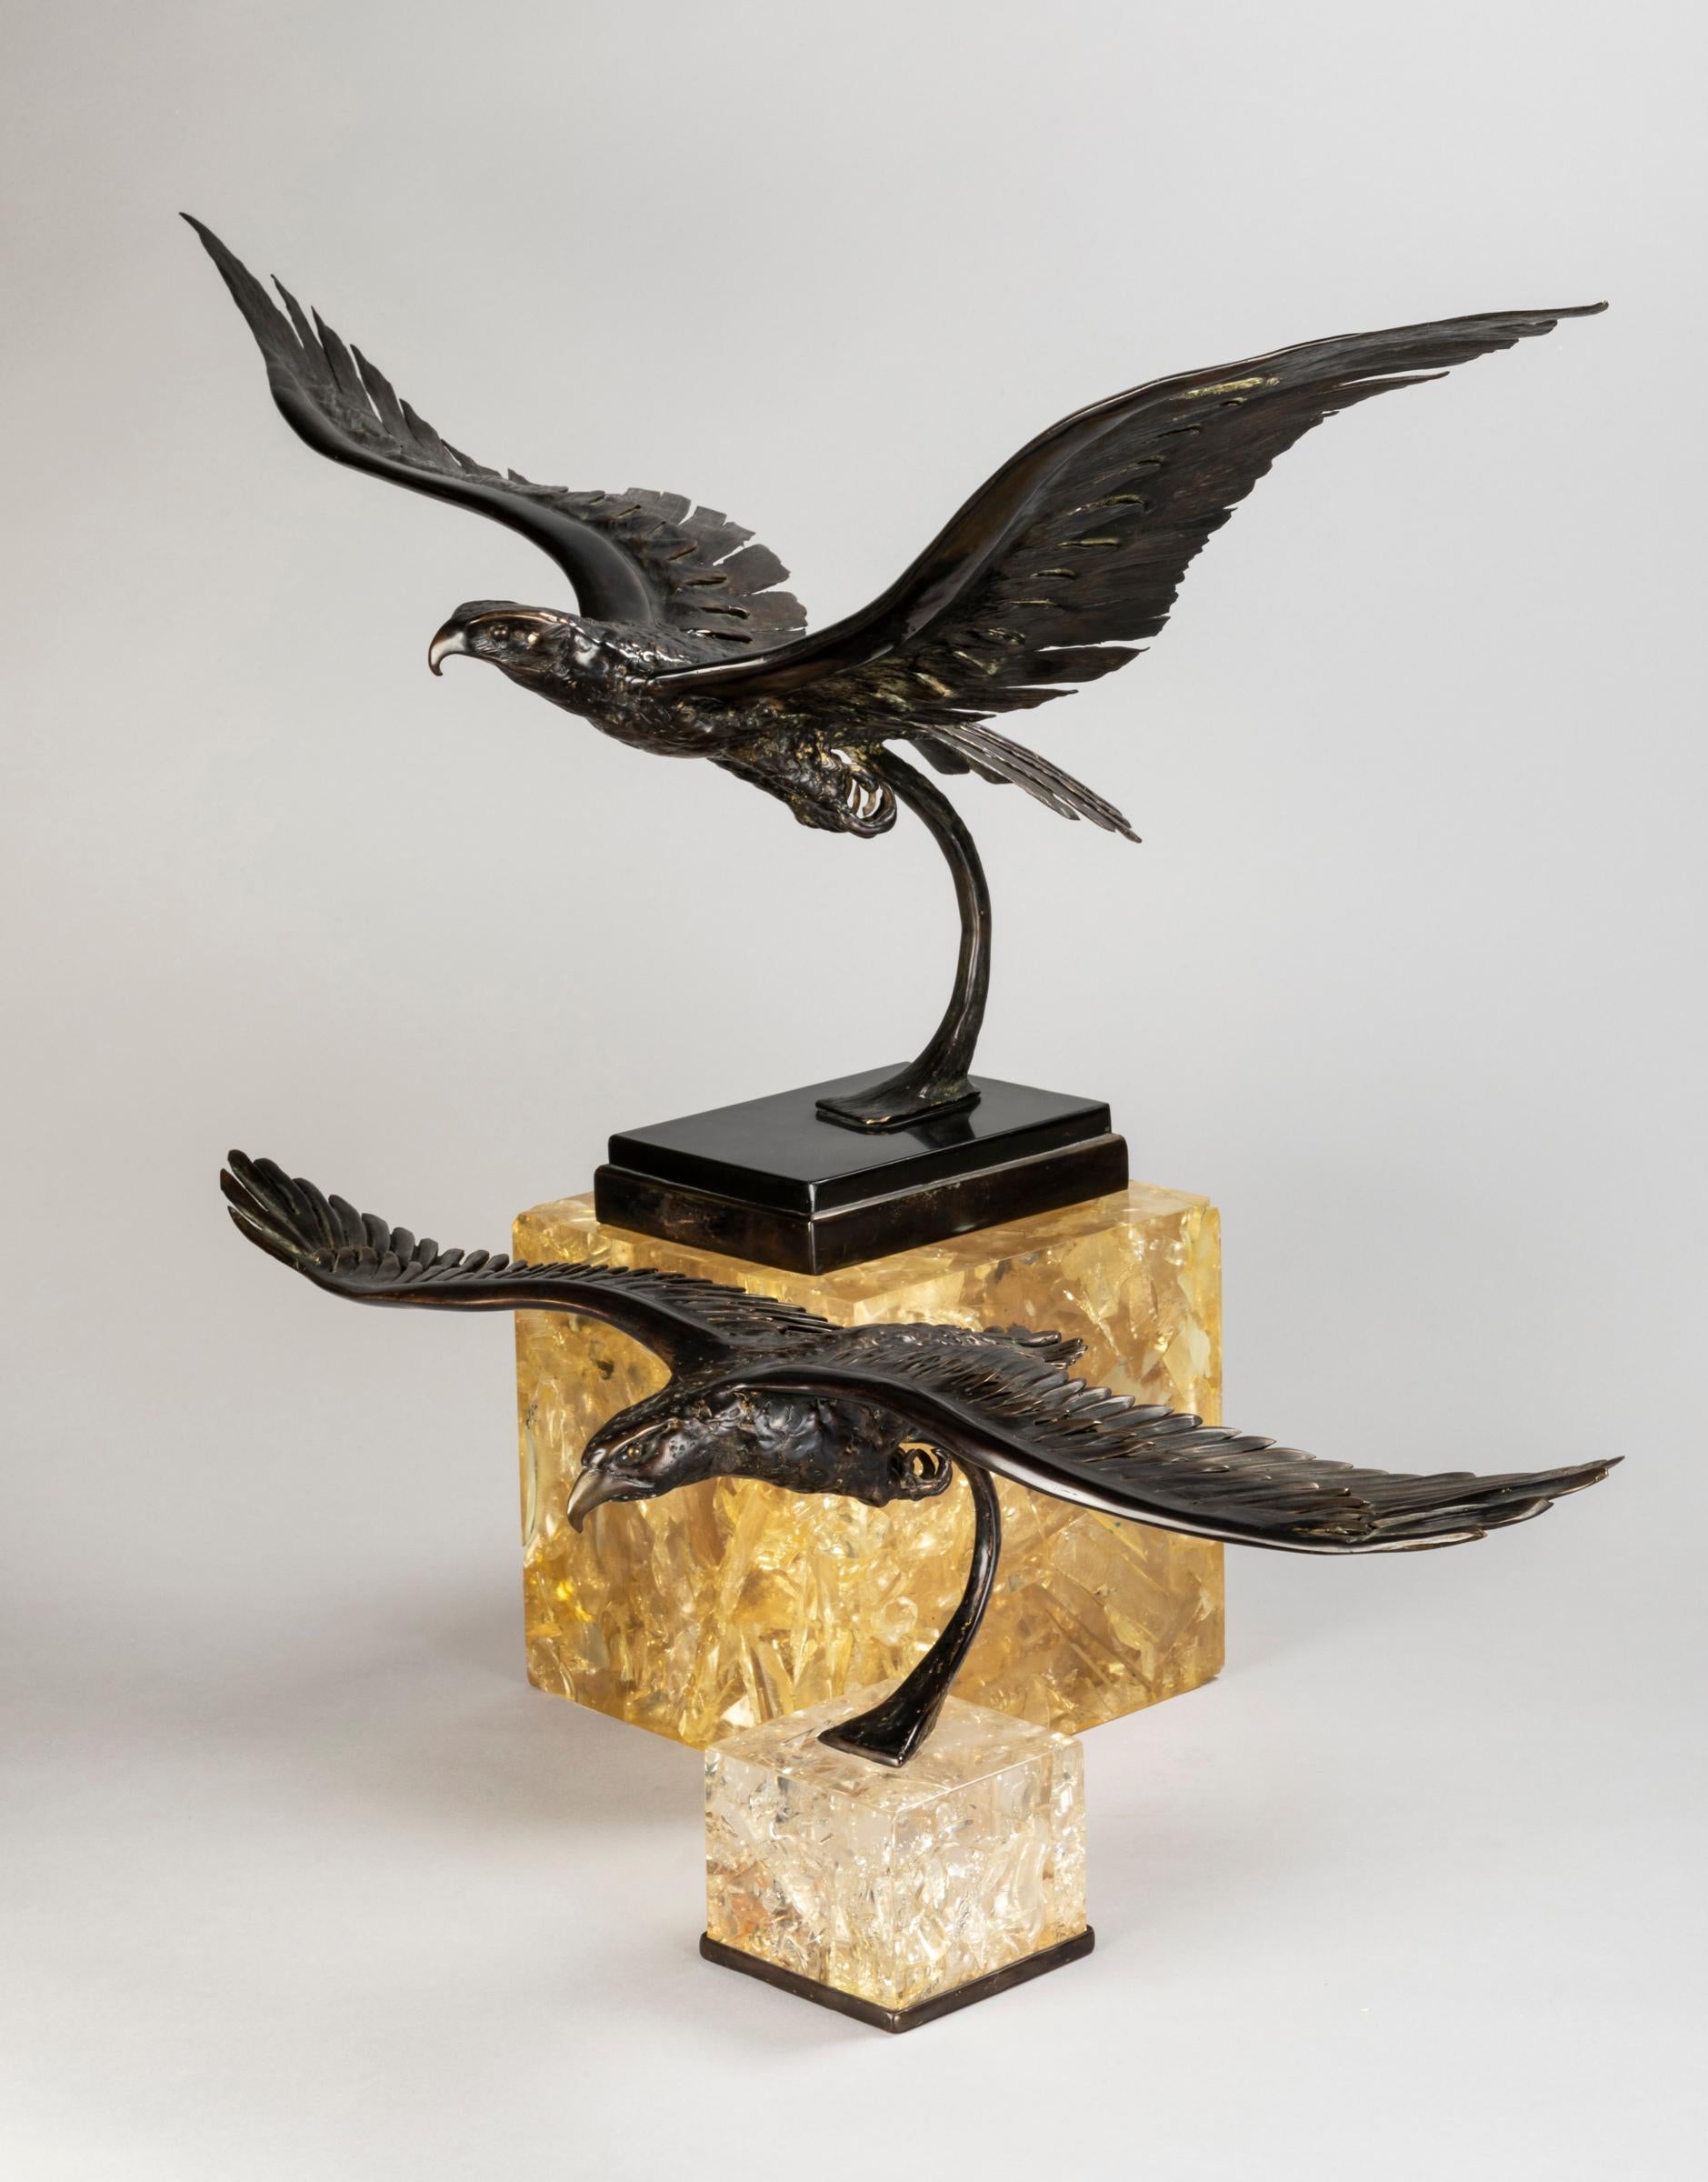 Deux superbes aigles volants en bronze posés sur des cubes de résine fractale (couleur légèrement champagne, or) Ces deux sculptures rares ont été créées par le célèbre artiste français Jacques Duval Brasseur qui s'est inspiré de la nature. Il aime